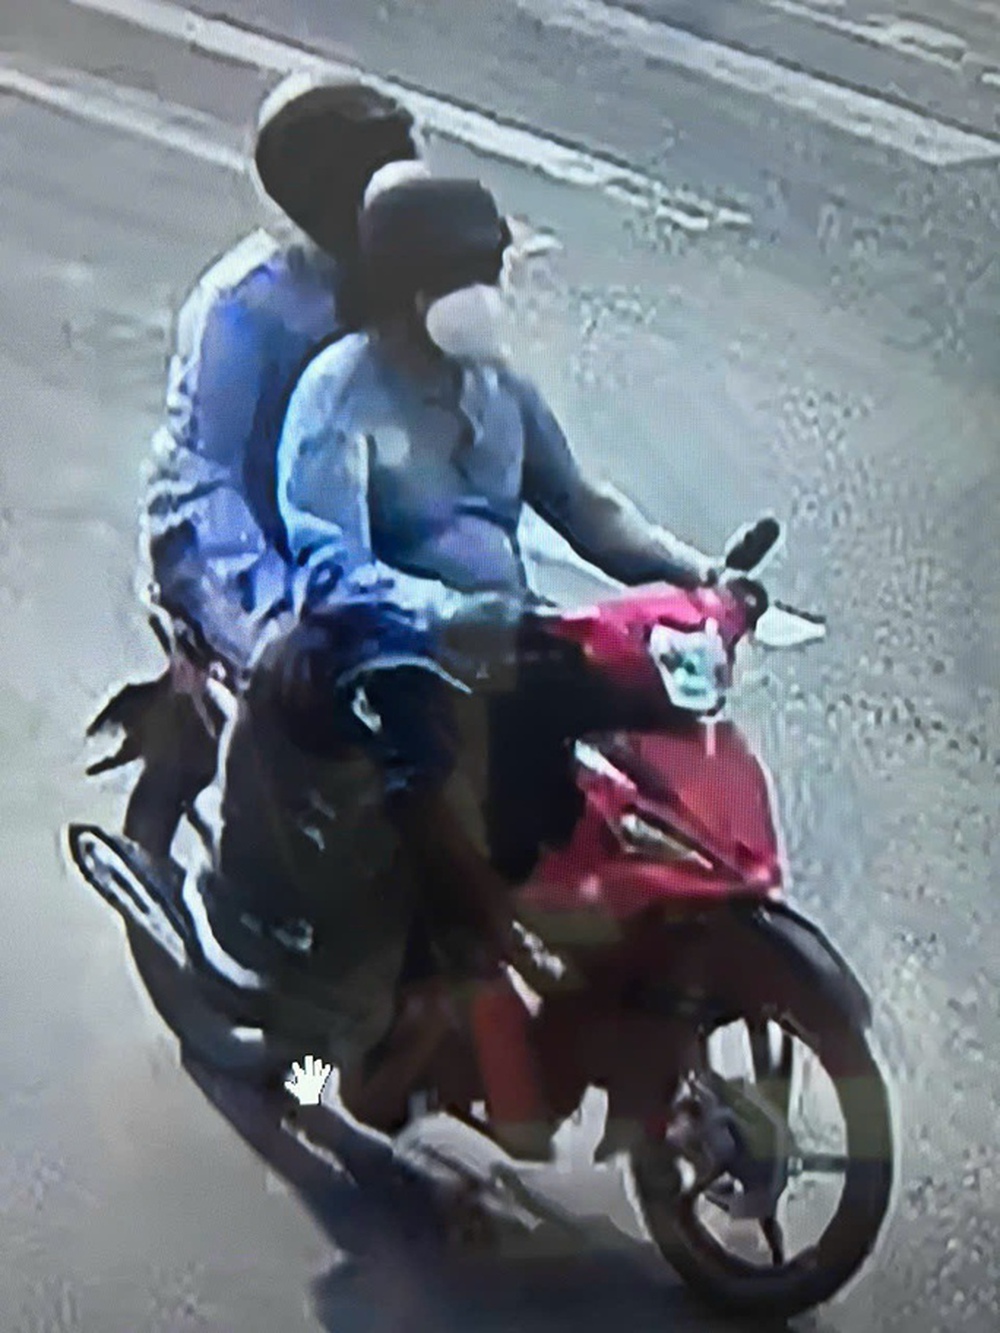 Vụ cướp tiệm vàng ở Cam Ranh: Công an truy tìm 12 mẫu trang sức, xe máy - Ảnh 5.